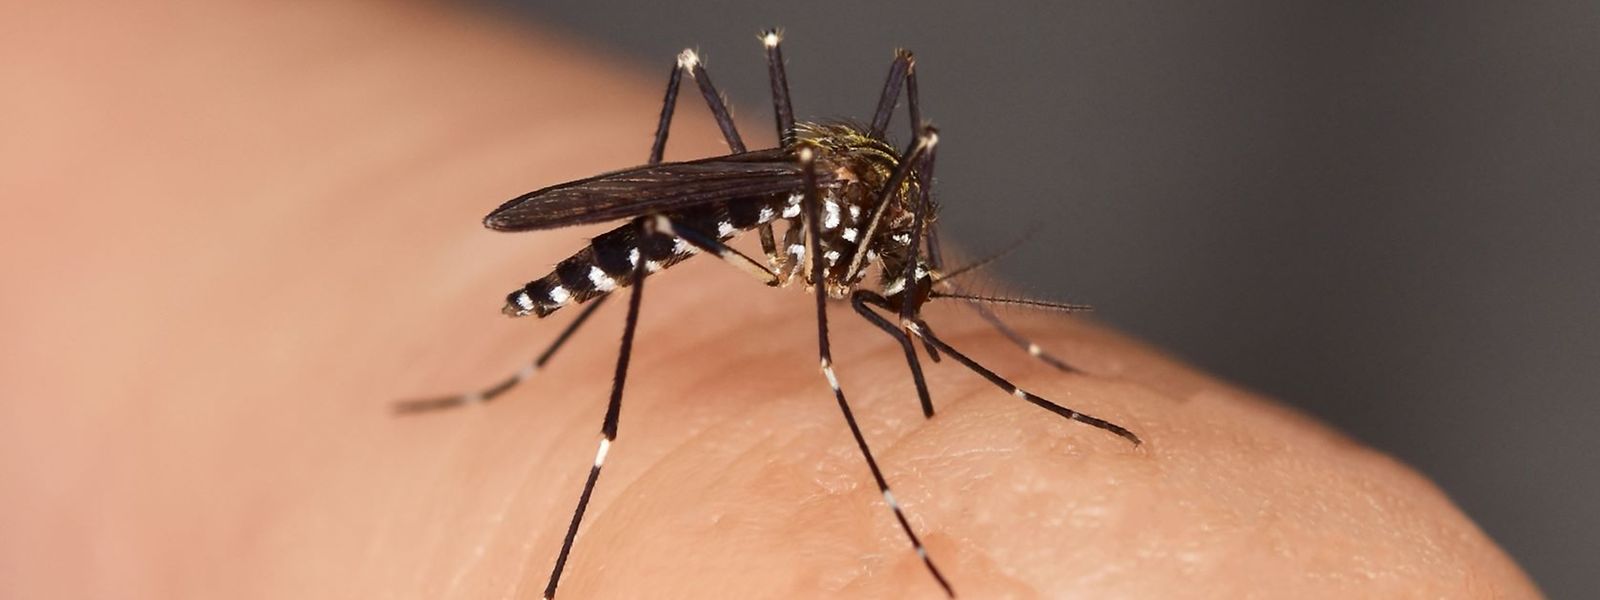  Le chikungunya, la dengue, ou encore le virus Zika, sont des maladies qui planent au-dessus de nos têtes avec l'arrivée de l'insecte dans nos contrées.